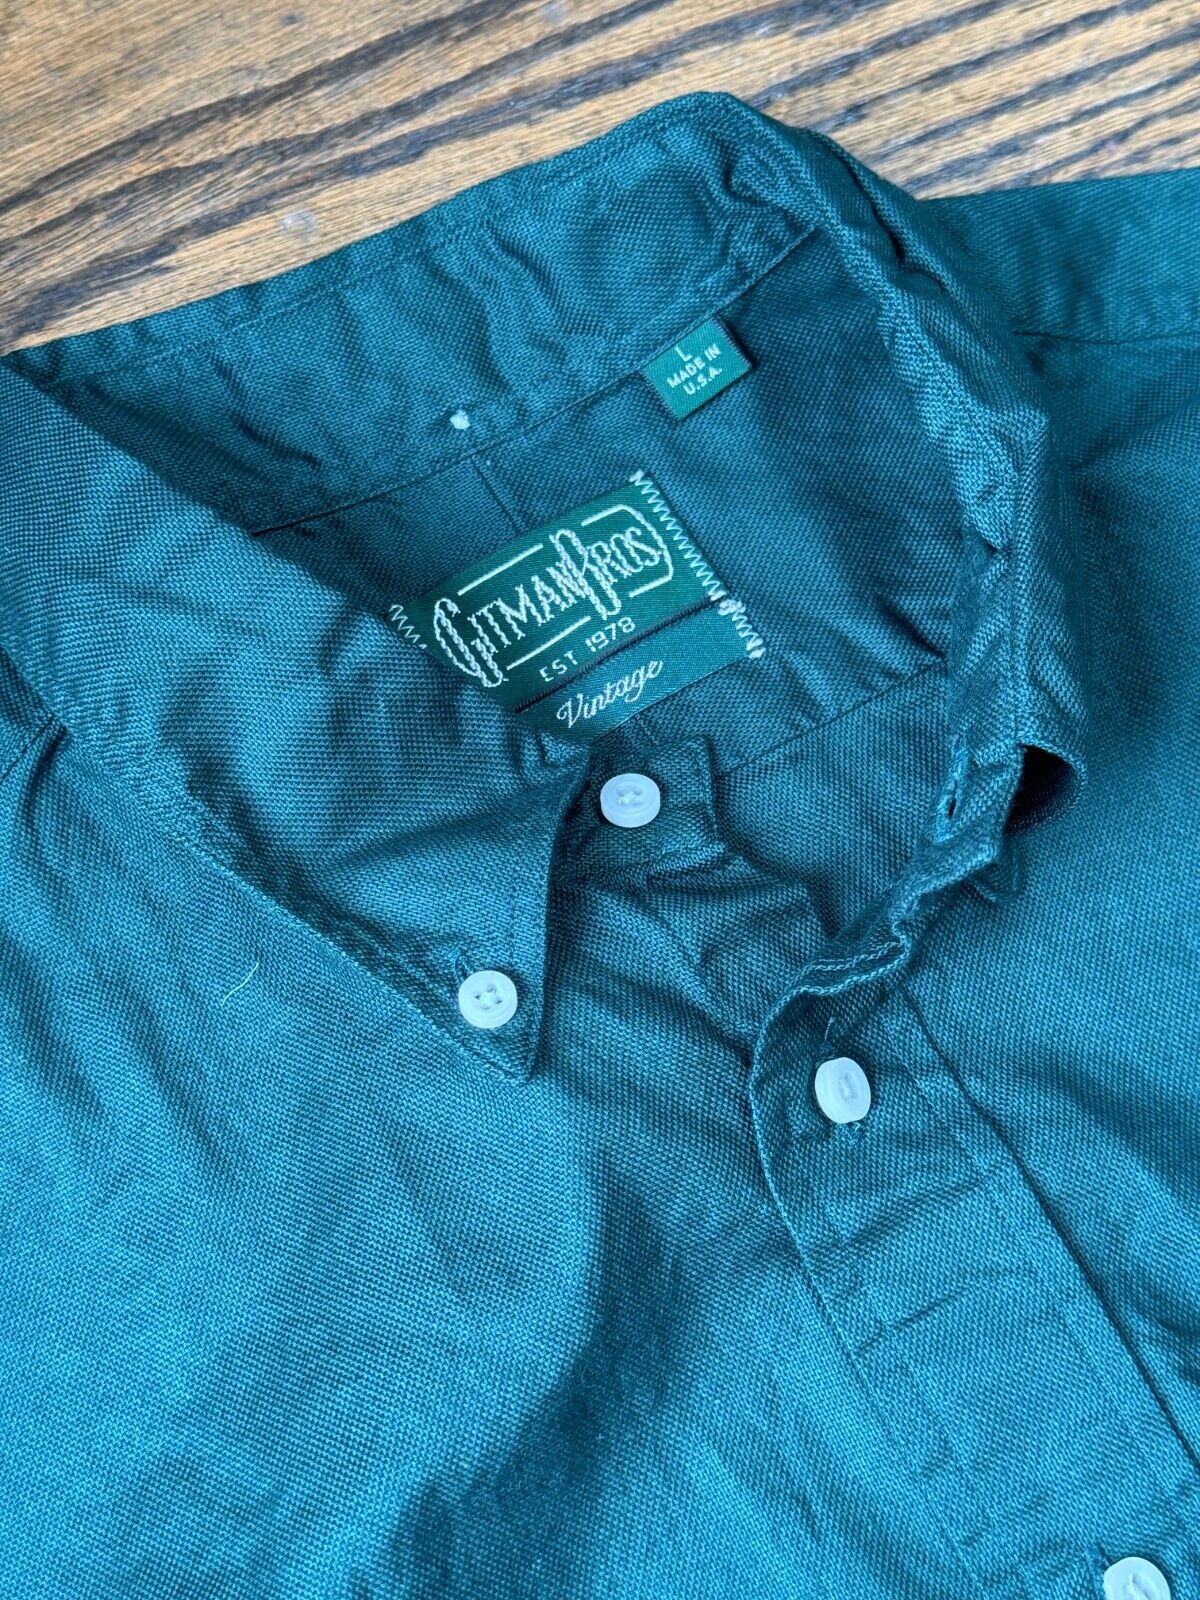 Gitman Vintage Green Hopsack Men\'s Shirt Size Large